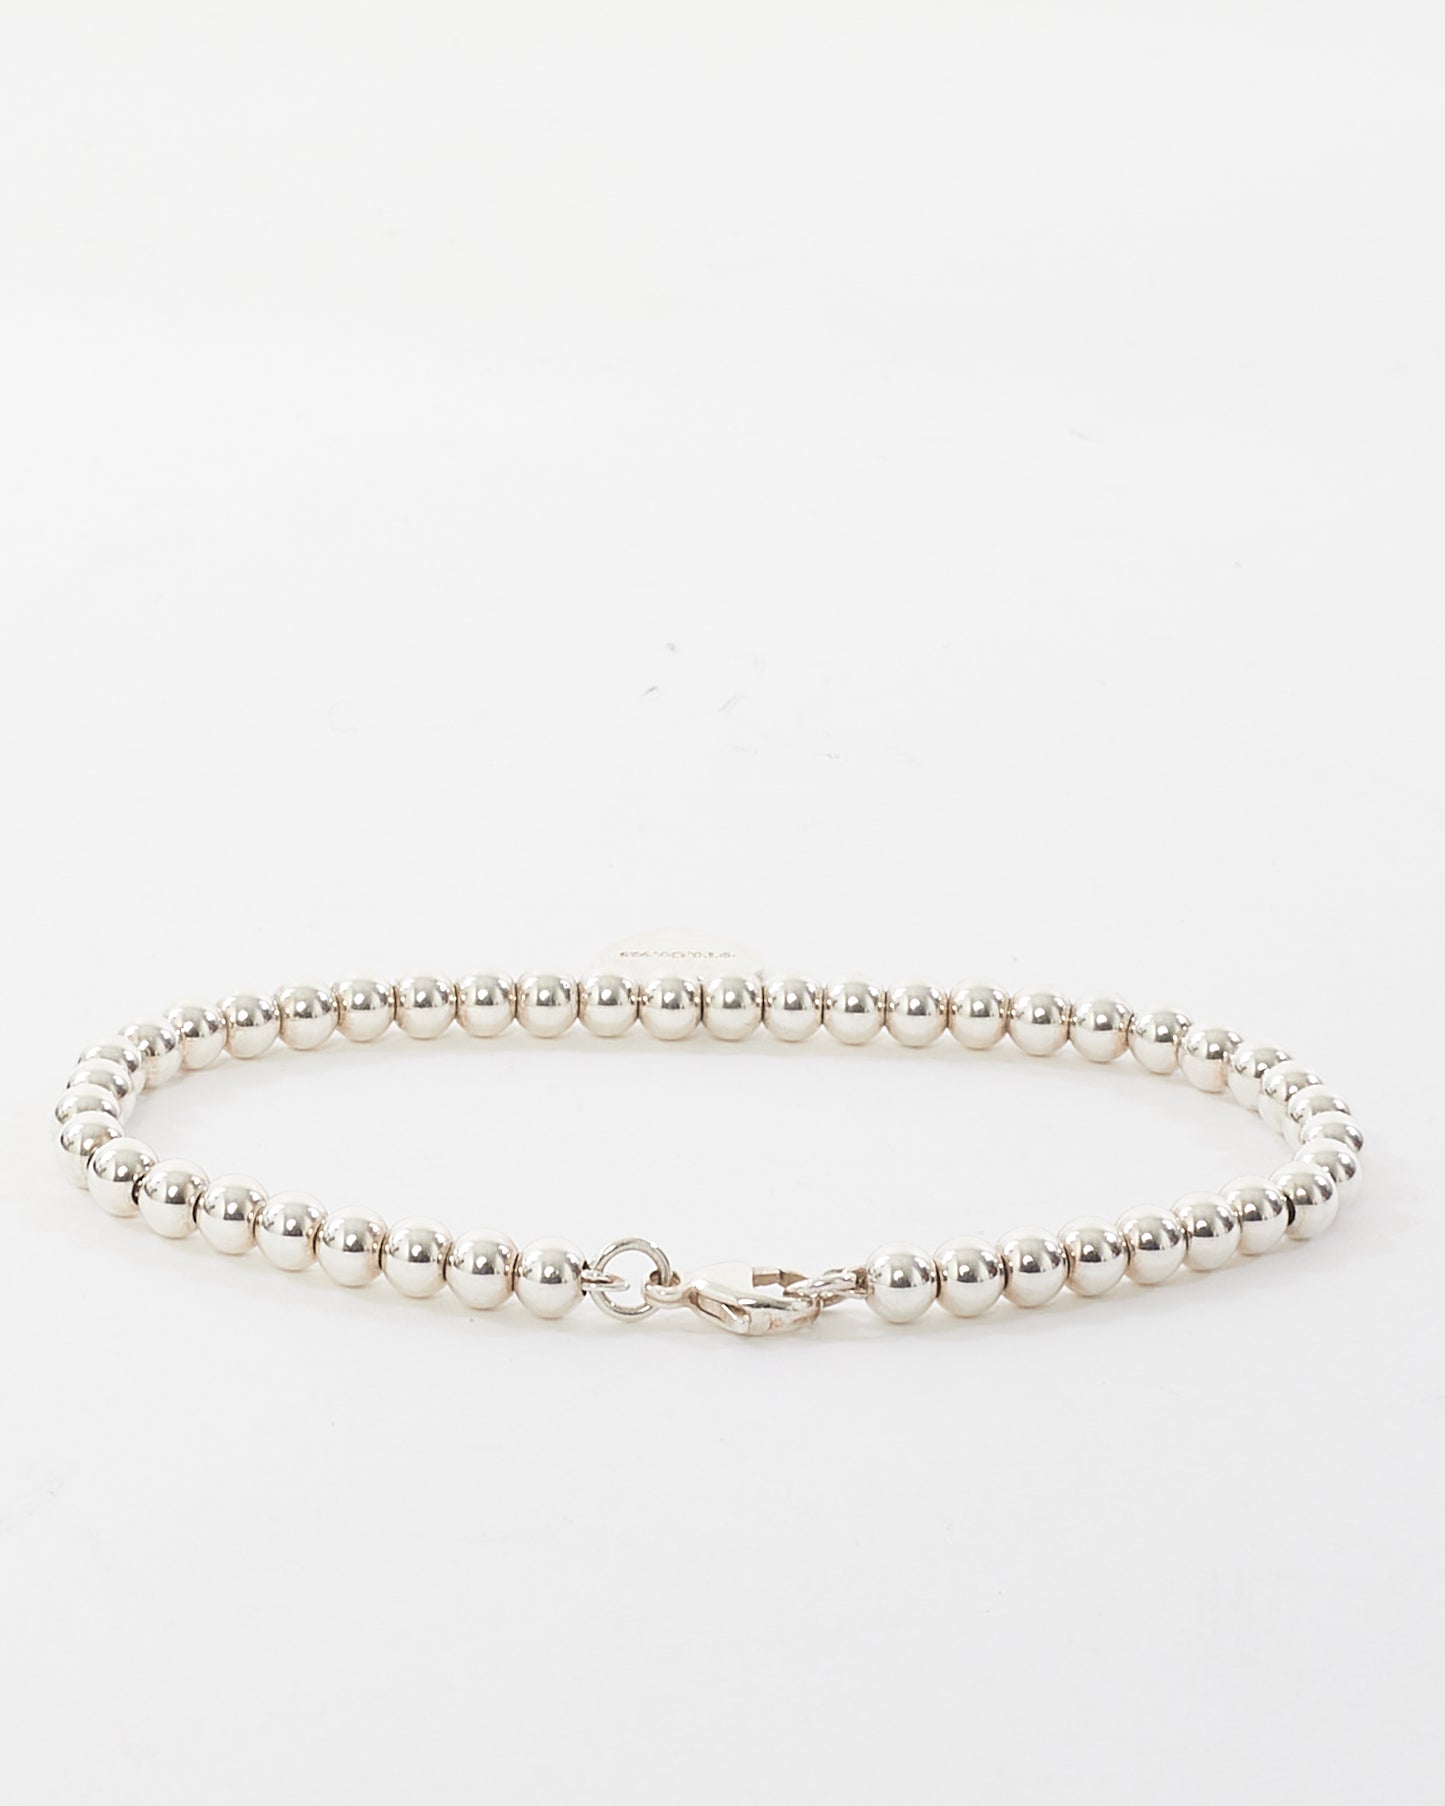 Tiffany & Co. Sterling Silver Heart Charm Beaded Bracelet